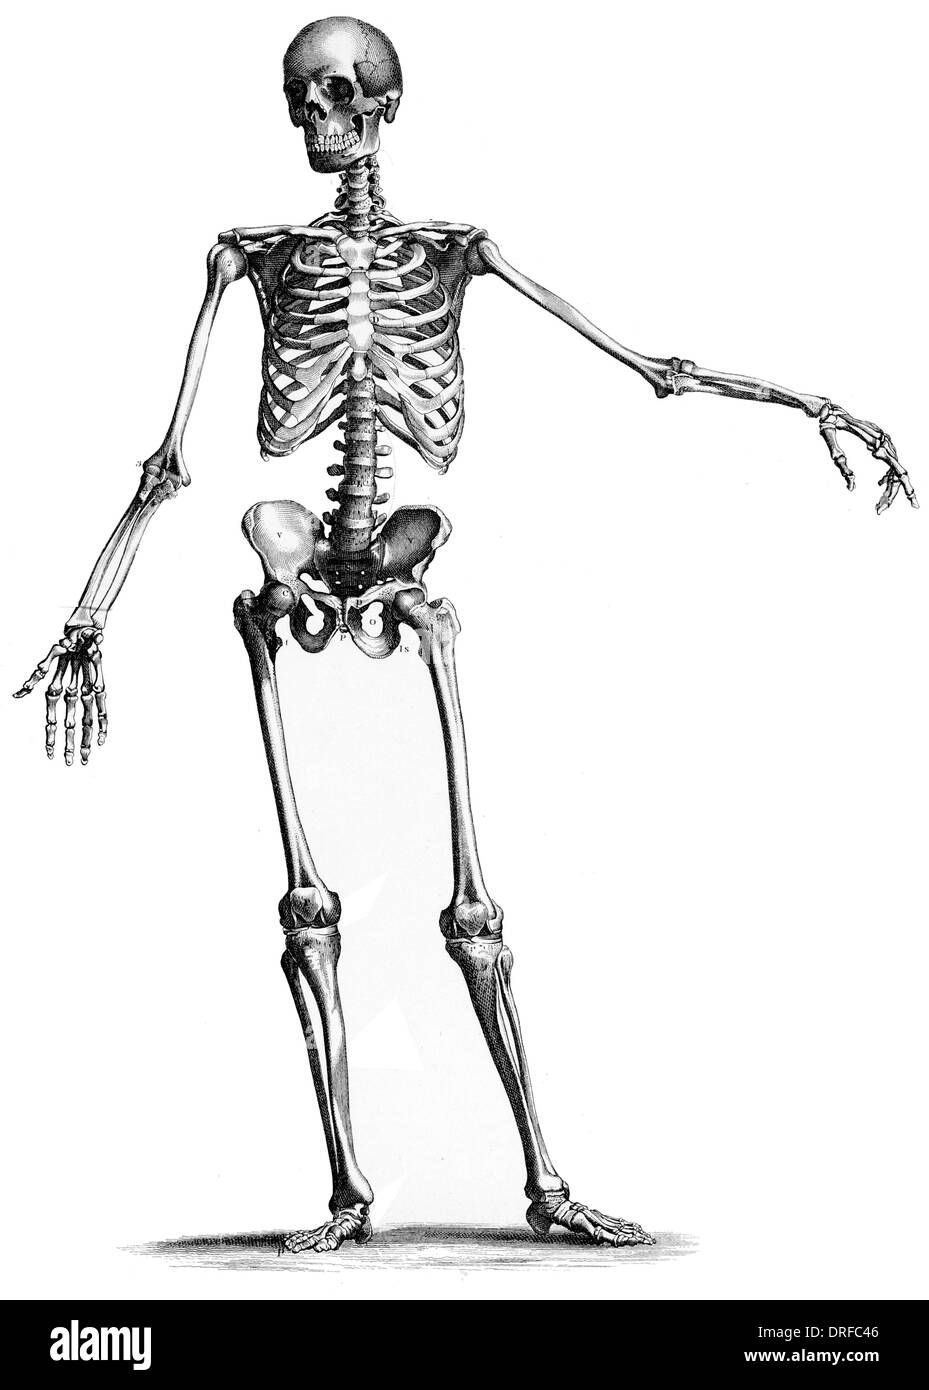 Esqueleto Imágenes de stock en blanco y negro - Alamy